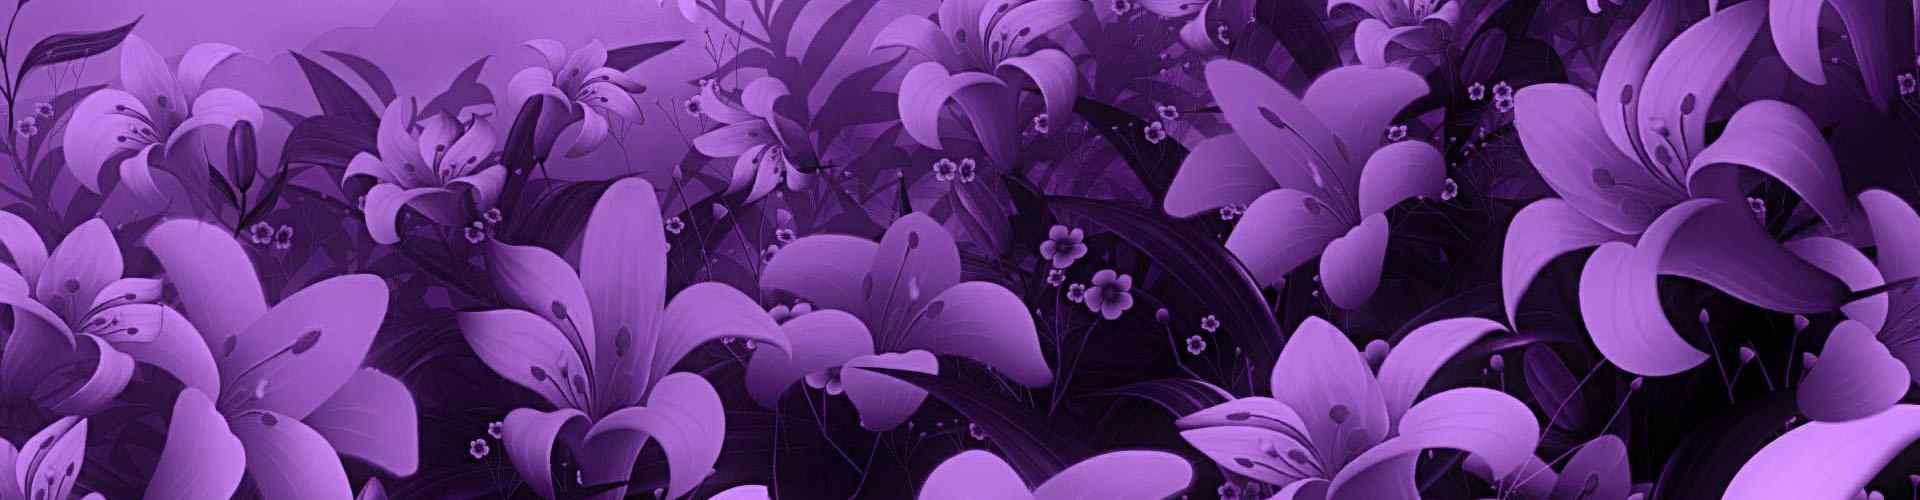 紫罗兰_紫罗兰图片_紫罗兰花图片_紫罗兰桌面壁纸、手机壁纸_美丽植物壁纸